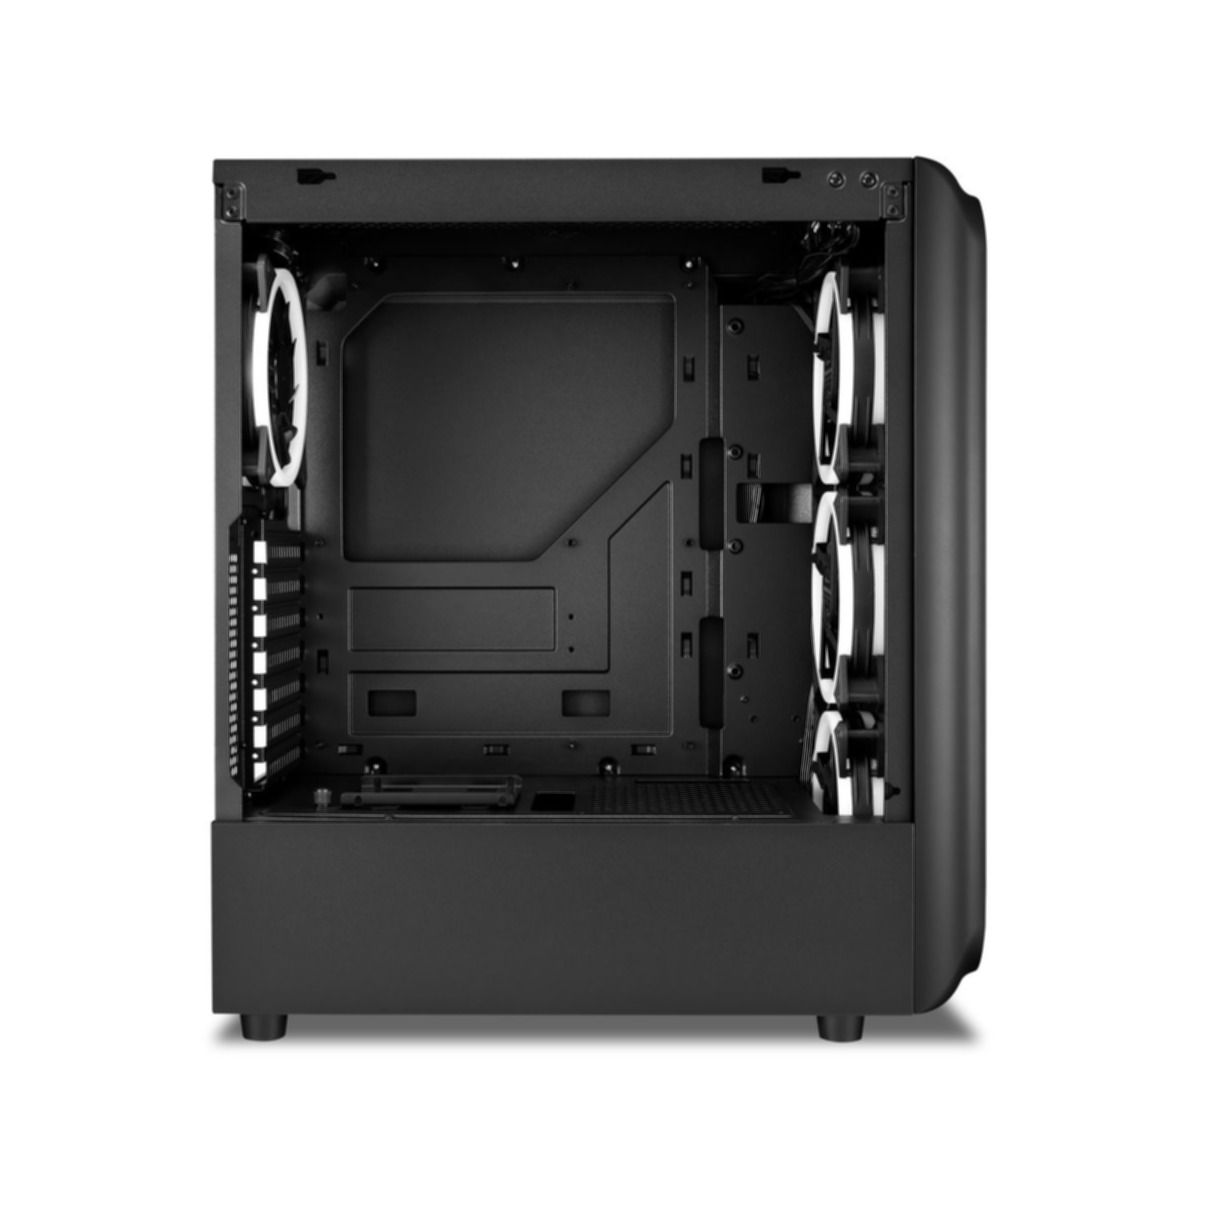 SHARKOON TK5M RGB ATX PC Gehäuse, schwarz